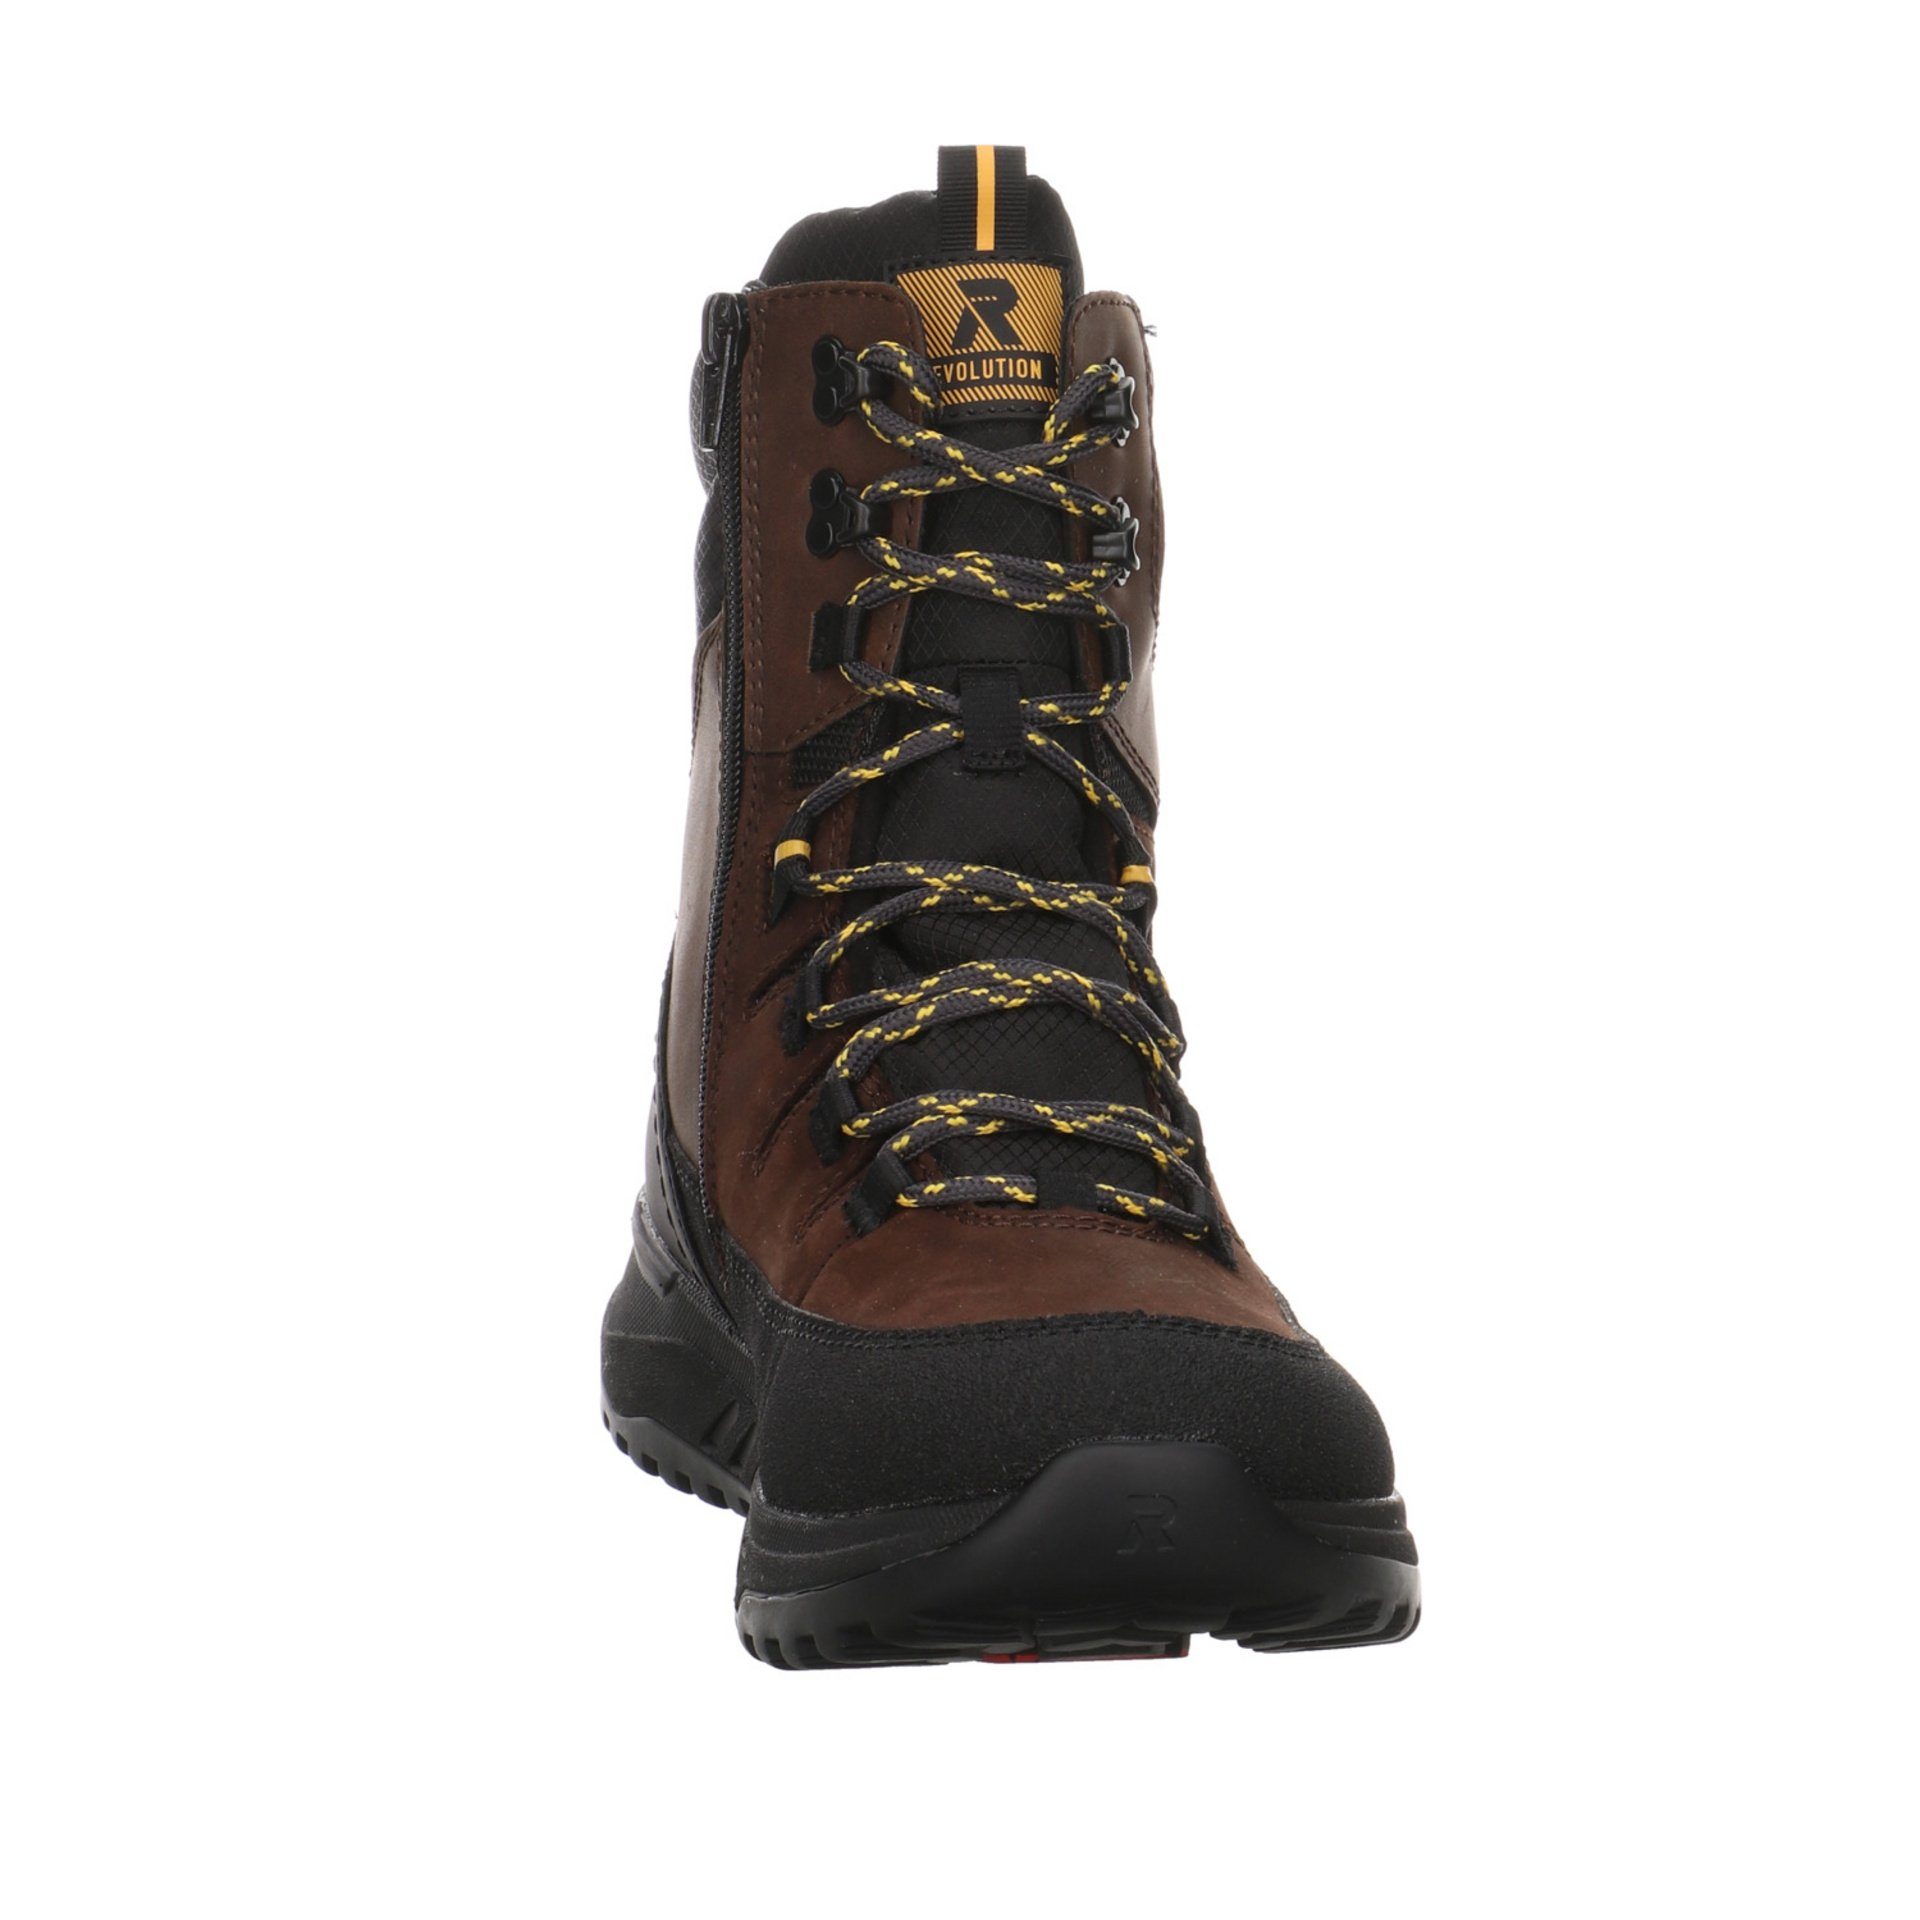 Winterstiefel Schuhe Freizeit Boots Herren Snowboots Rieker dunkel Elegant braun Leder-/Textilkombination